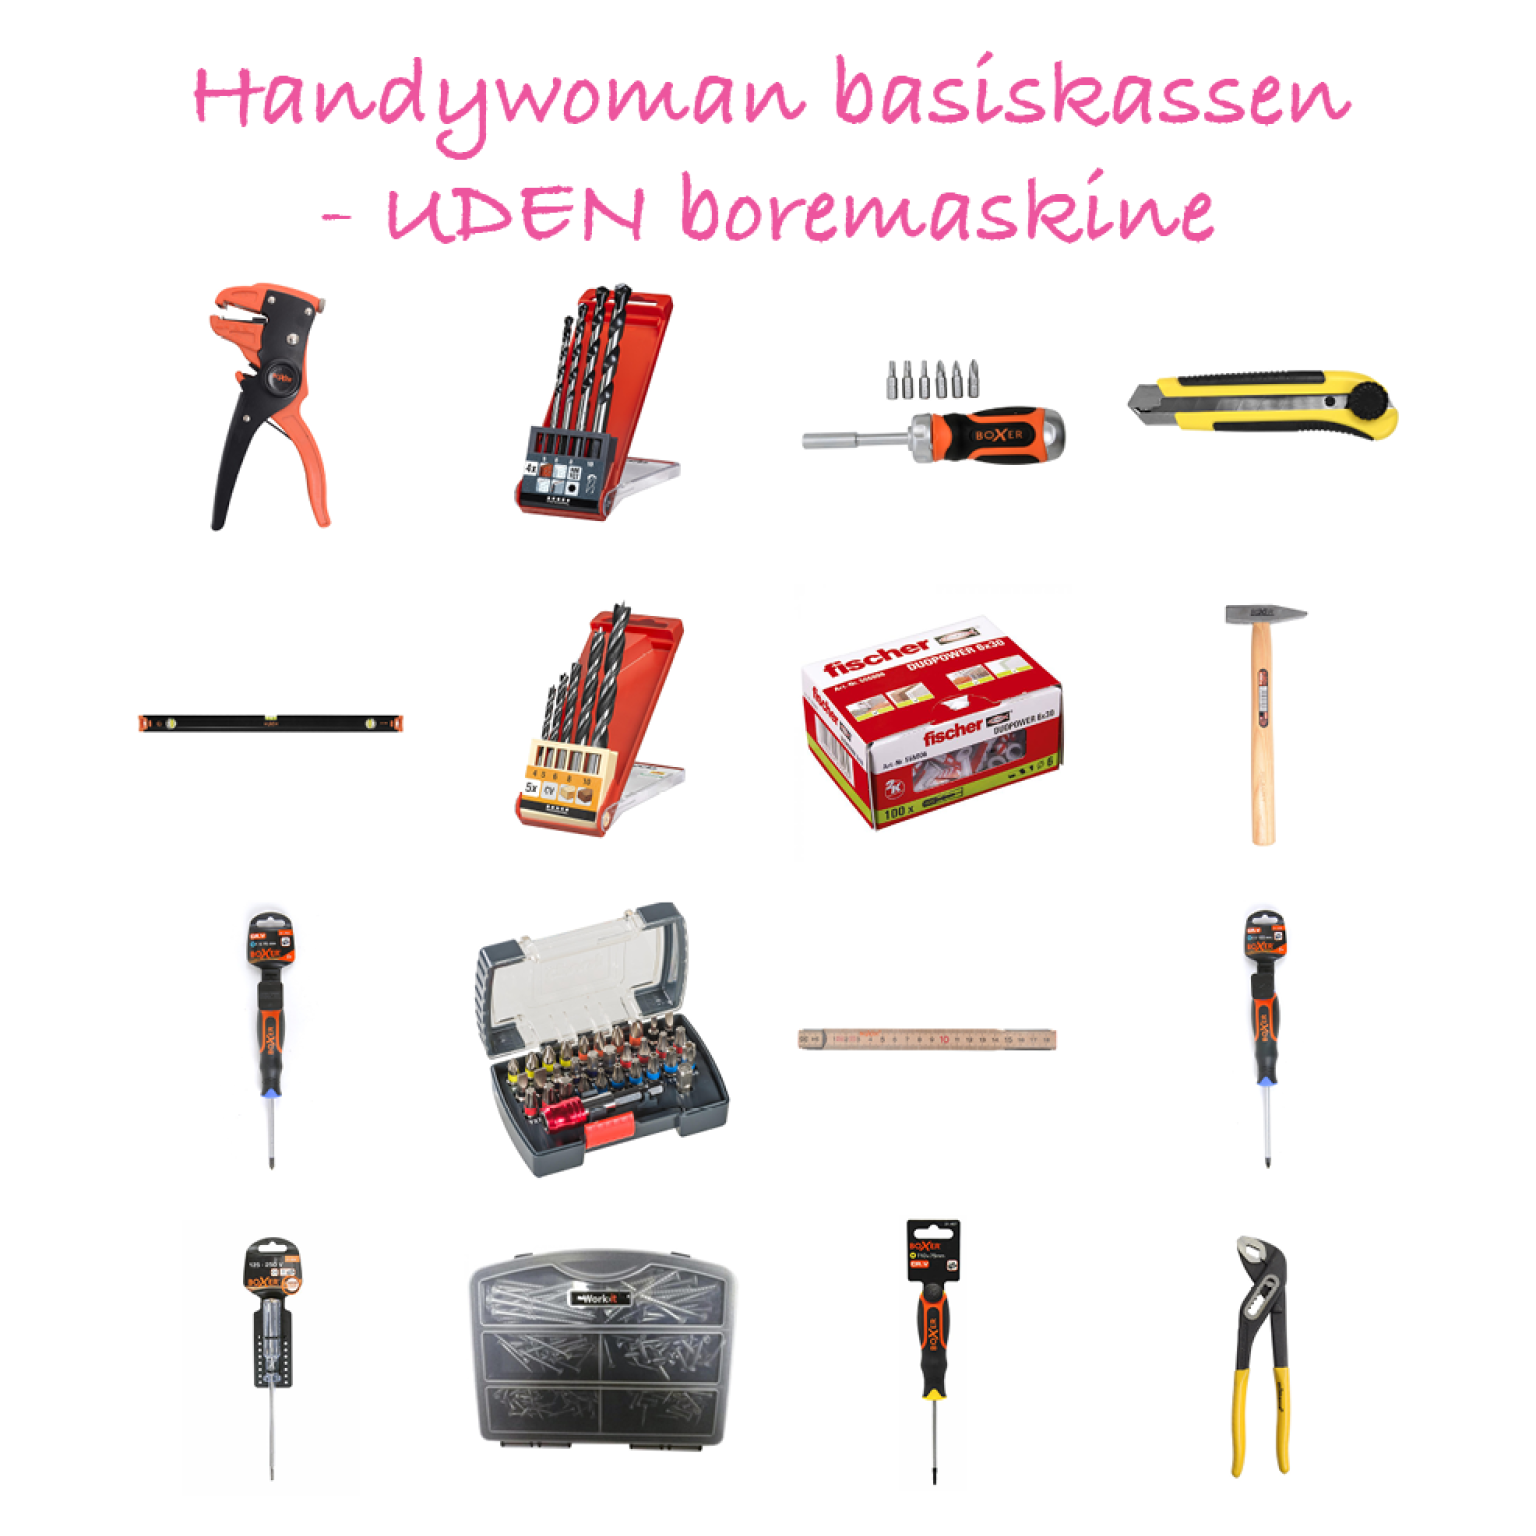 Handywoman værktøjskassen UDEN boremaskine - basis